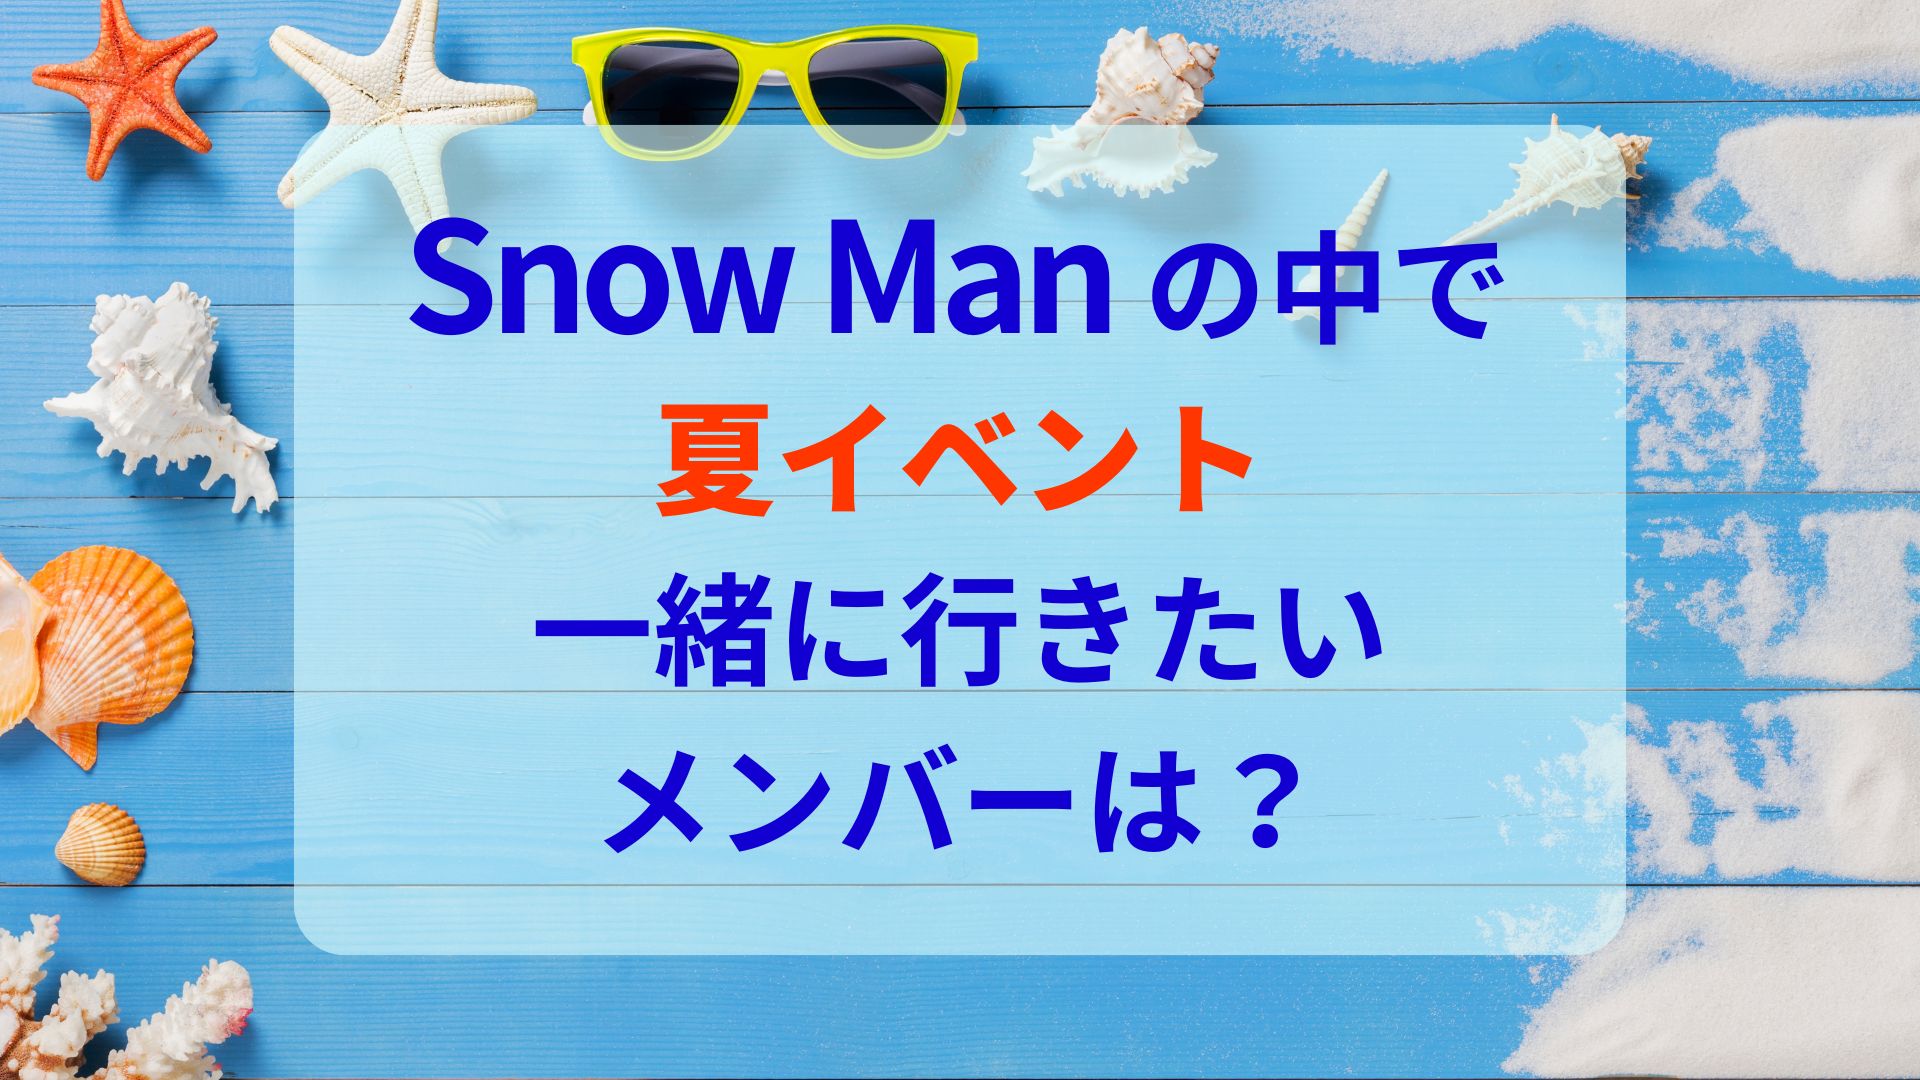 Snow Man夏イベント一緒に行きたいメンバーは？